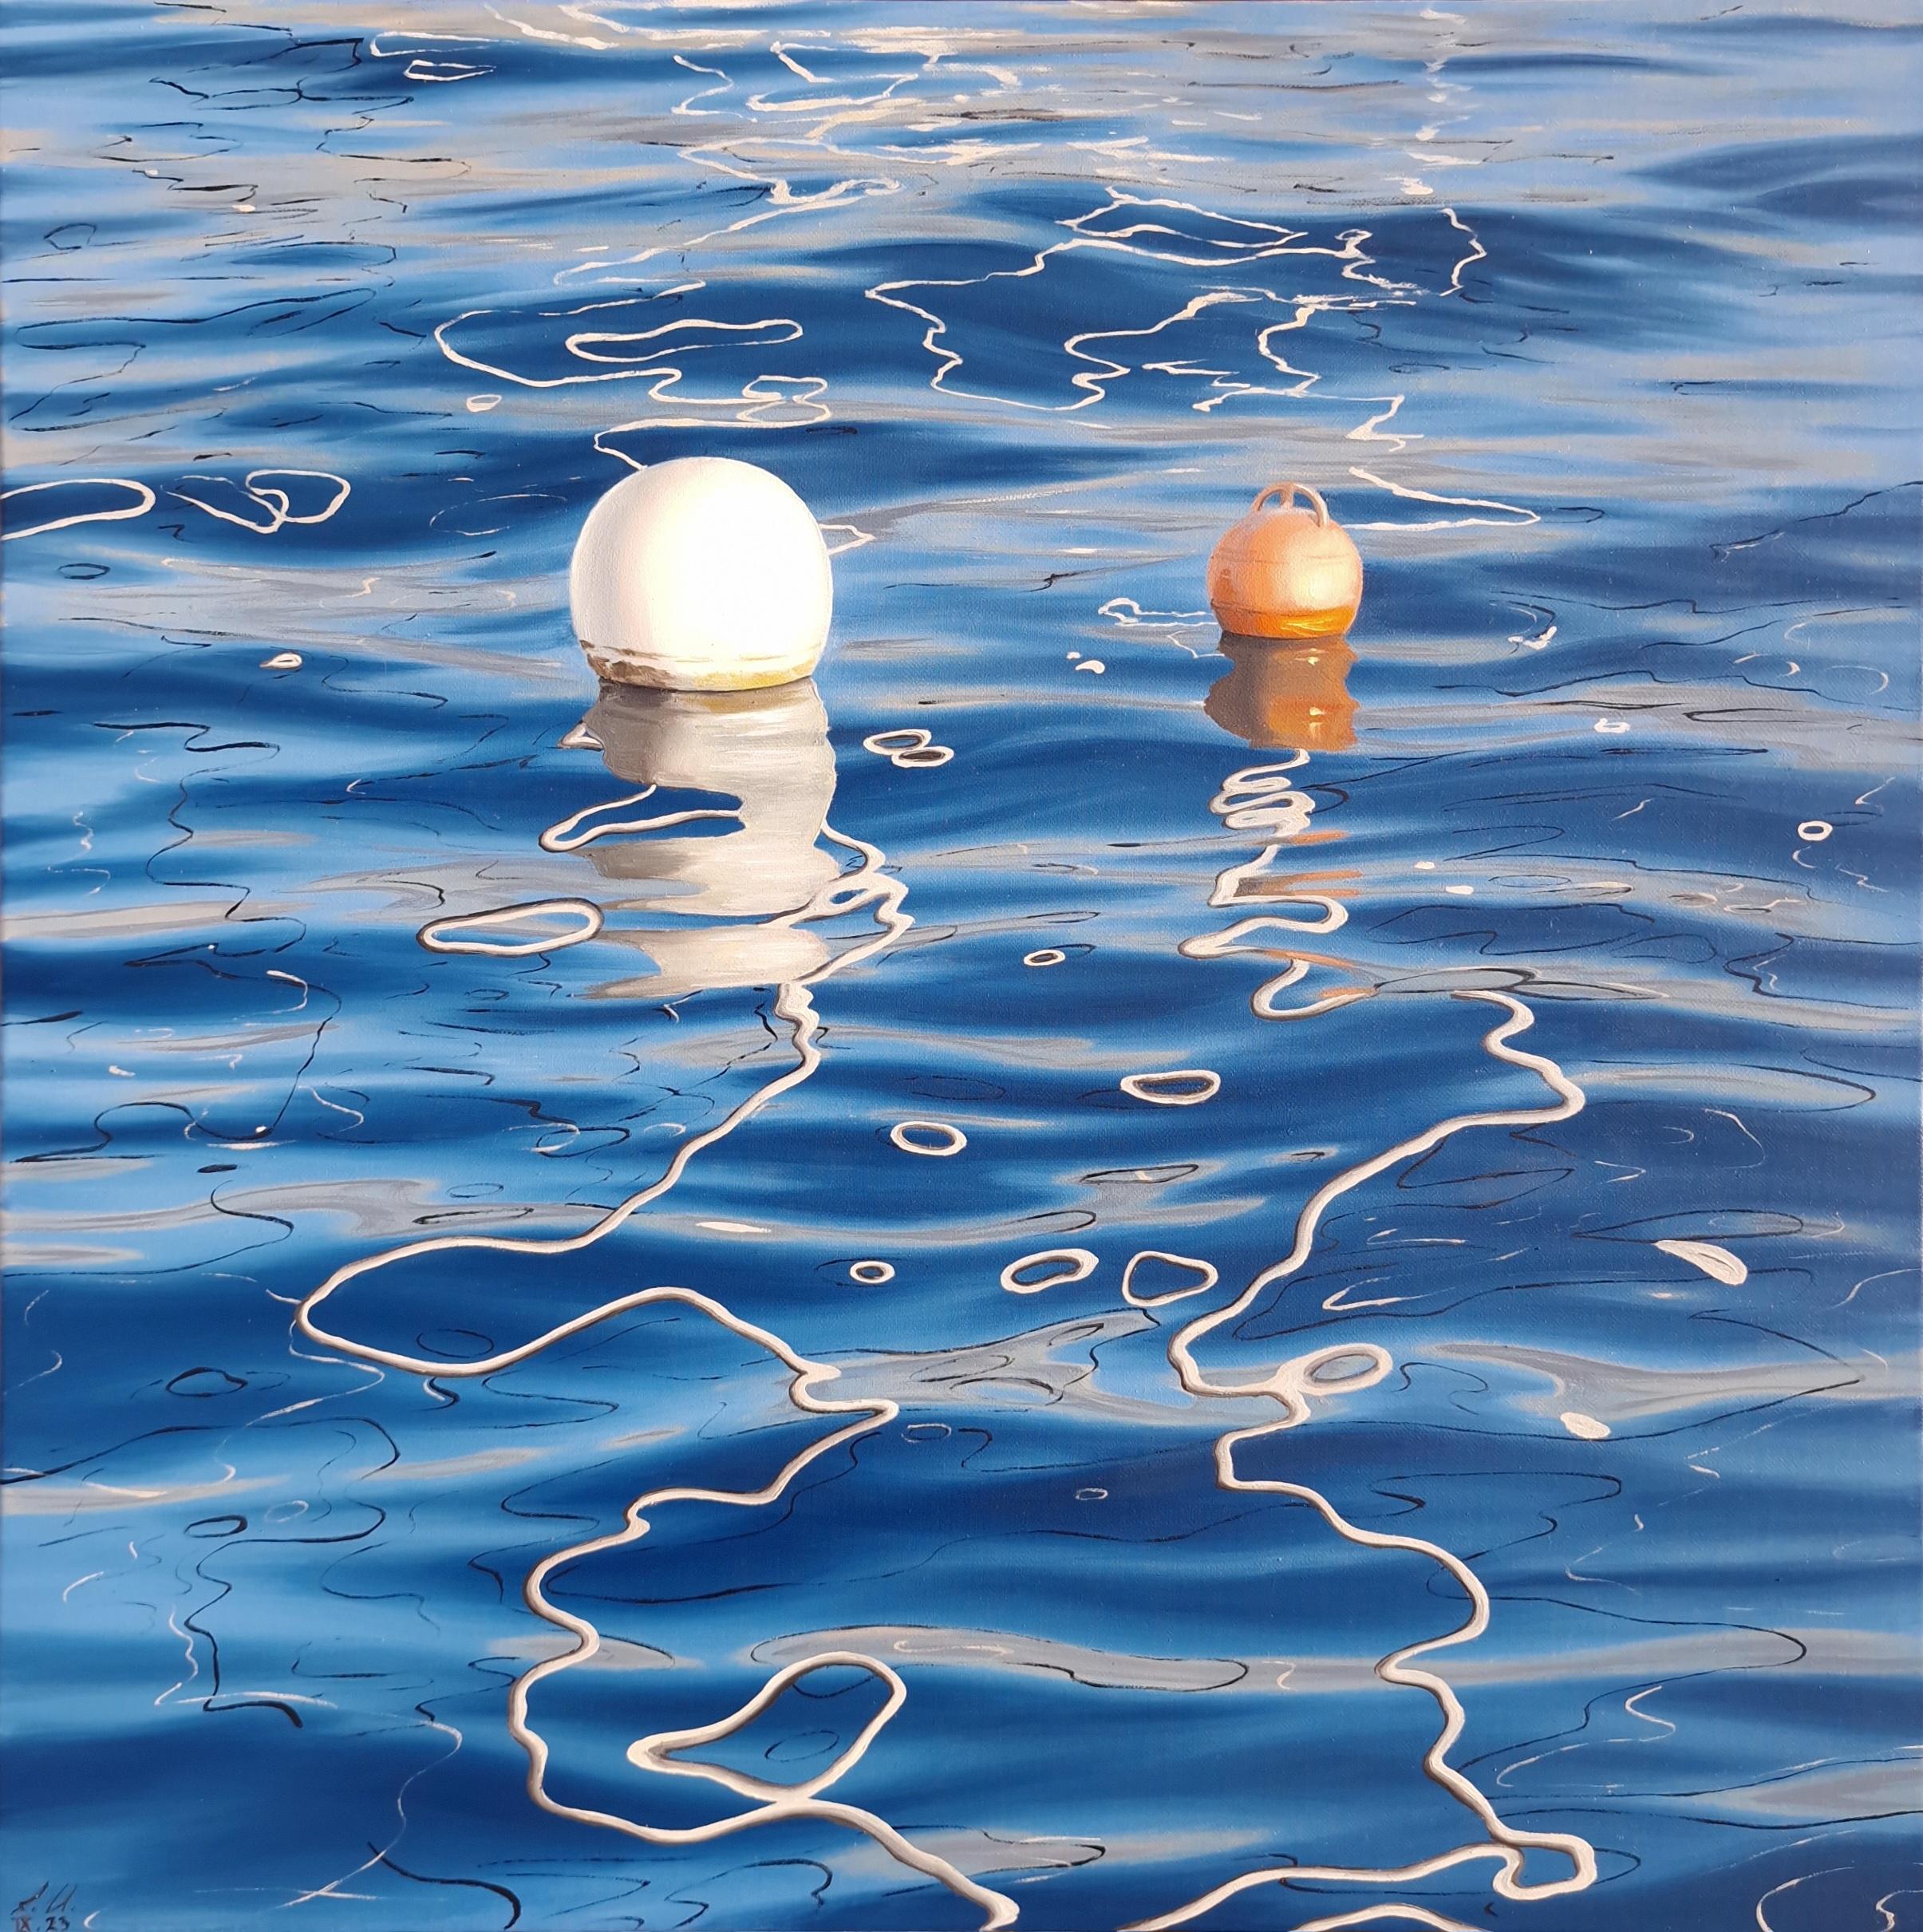 L'heure dorée au port - réalisme original - paysage marin - nature morte - peinture à l'huile - art - Art de Alina Huberenko